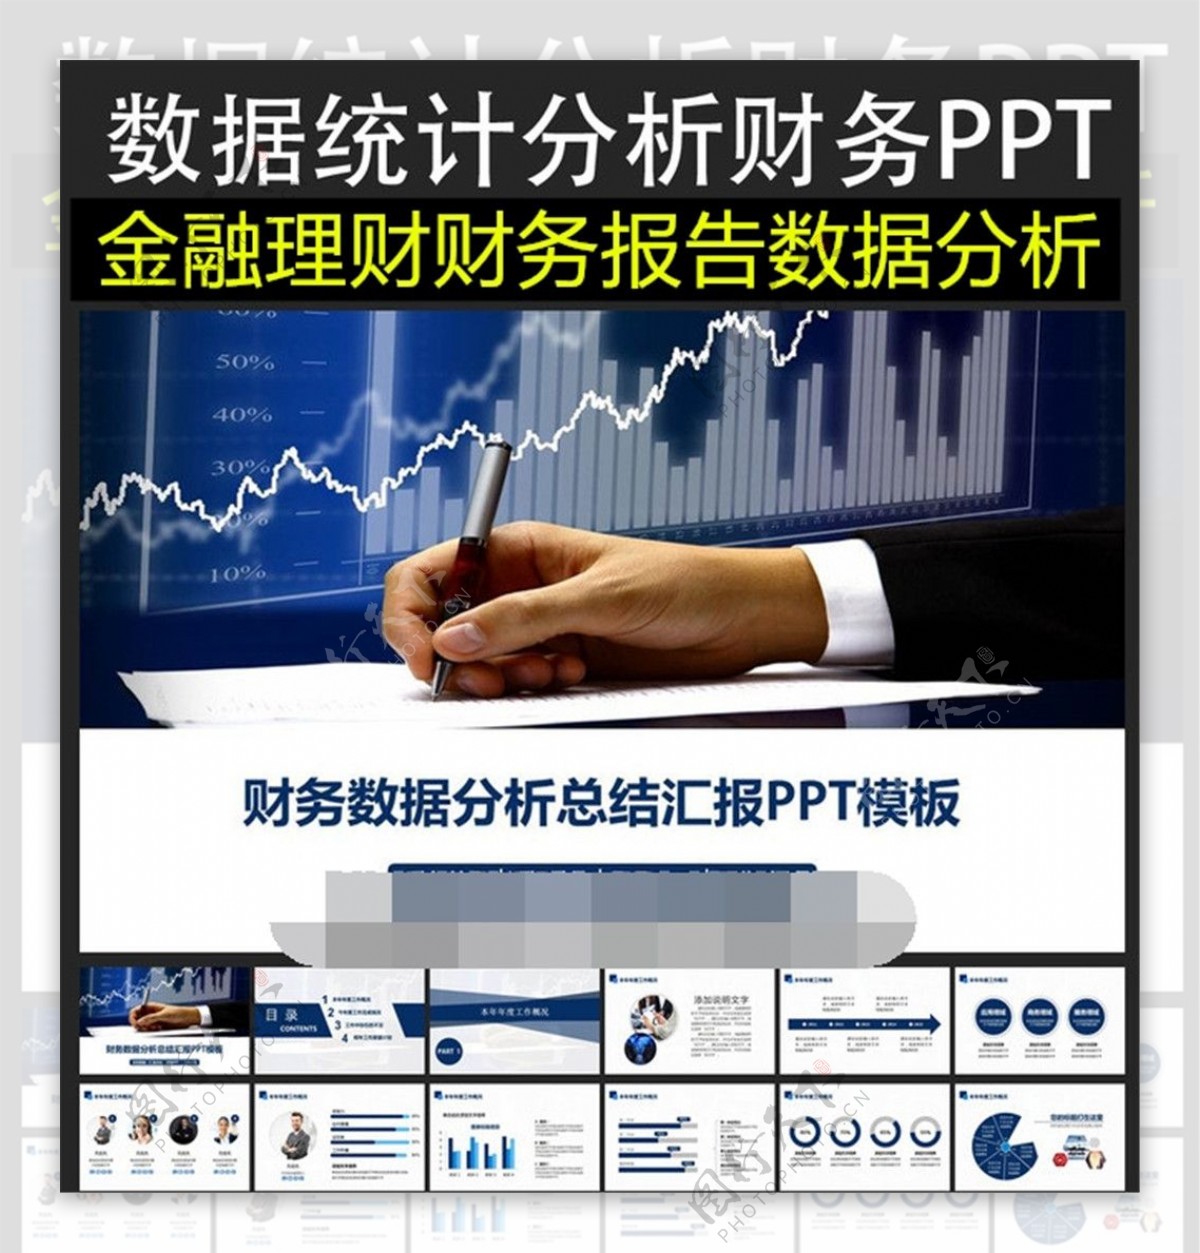 数据统计分析财务商务PPT模板下载